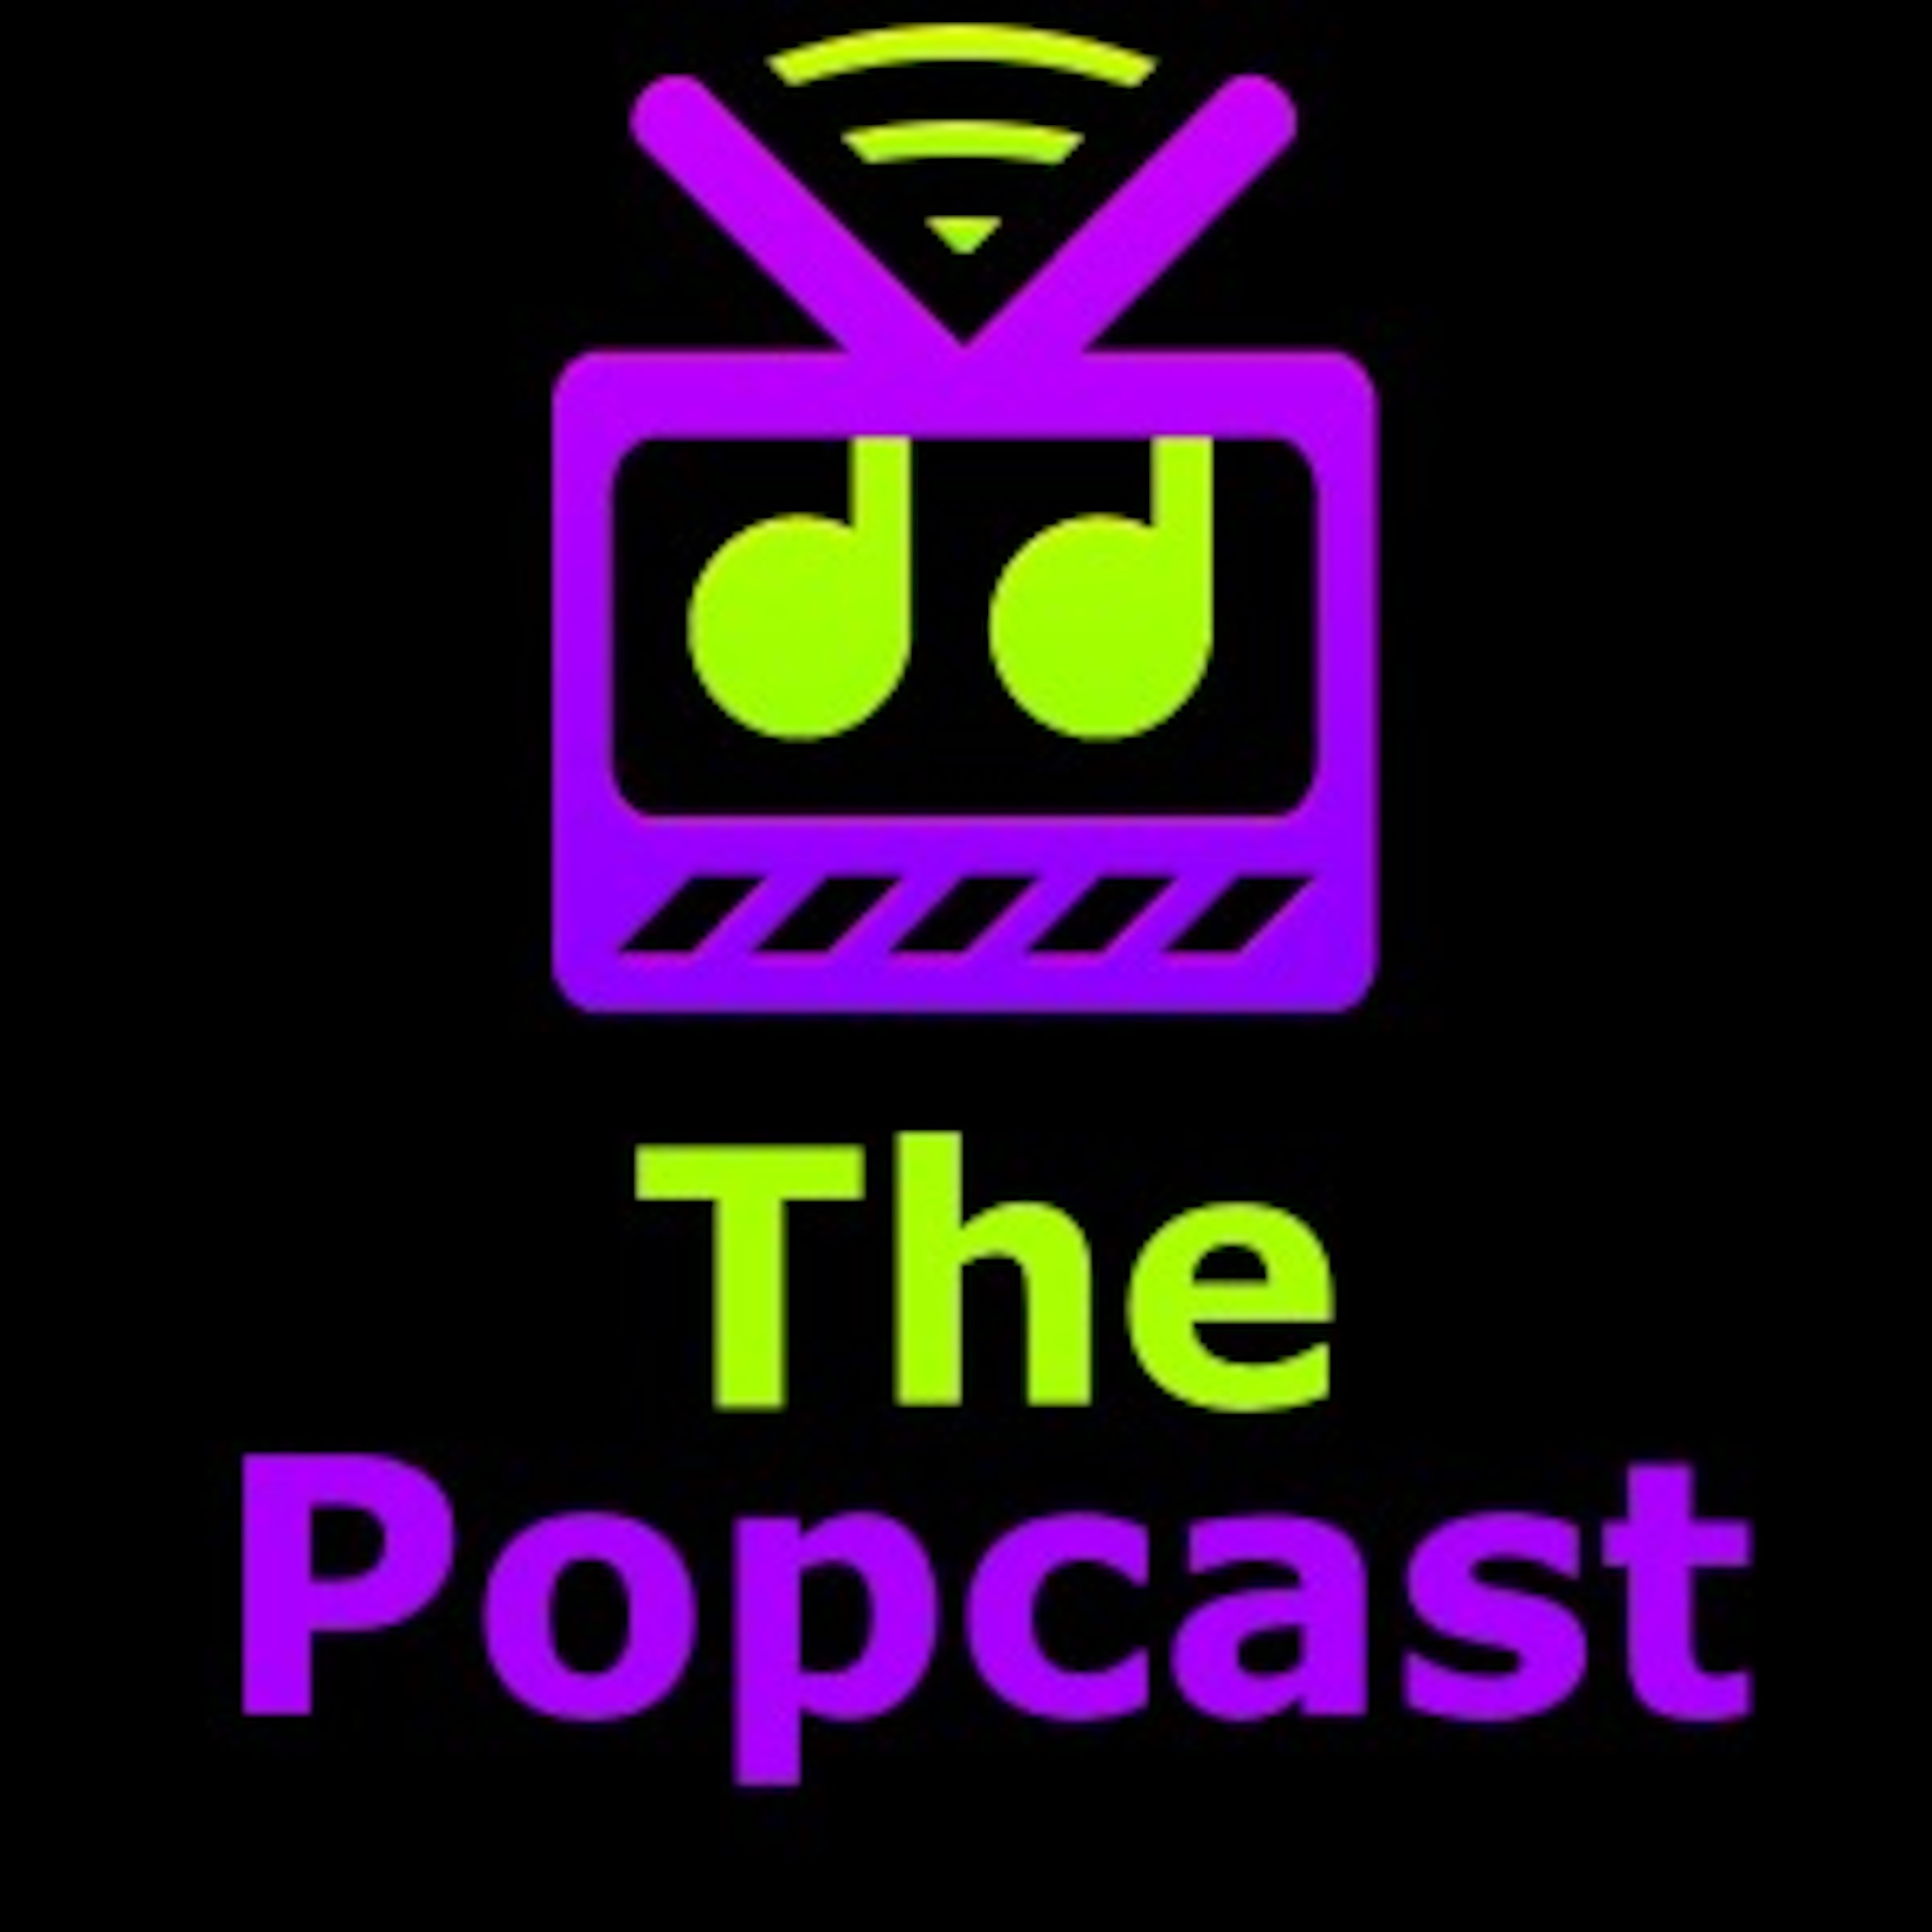 Popcast Podcast